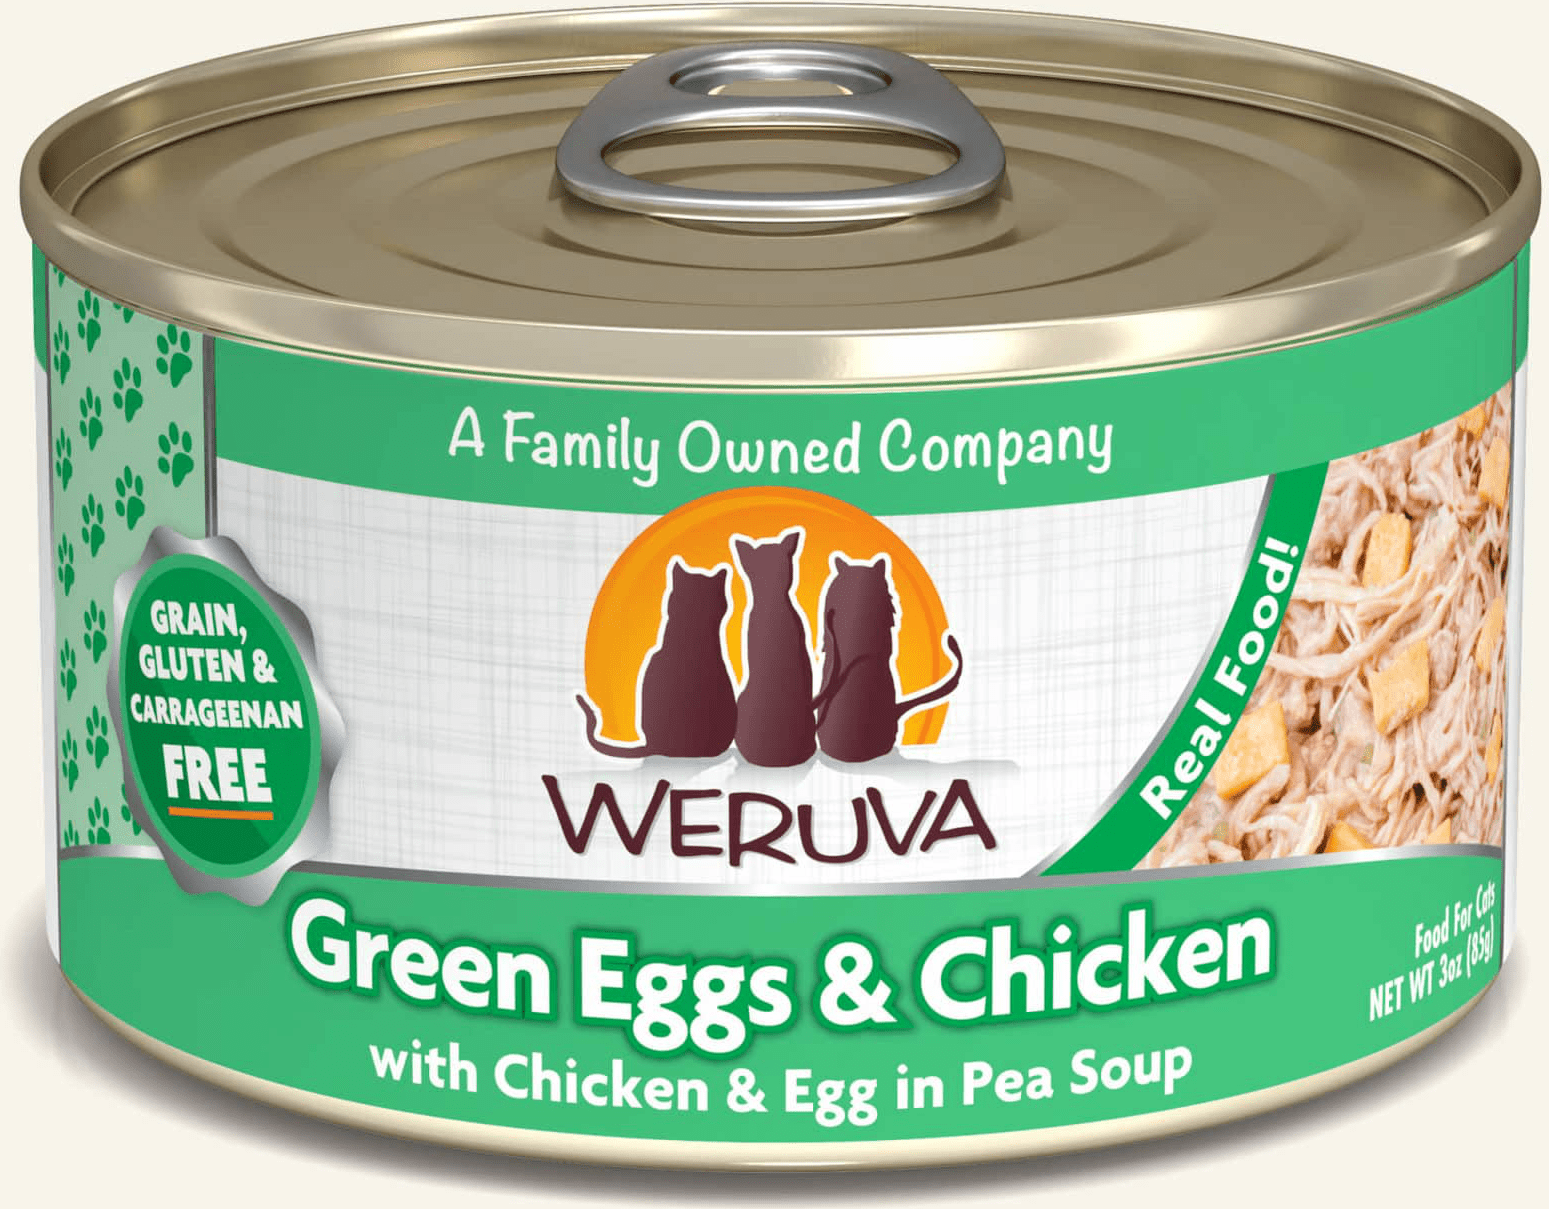 Weruva Green Eggs & Chicken